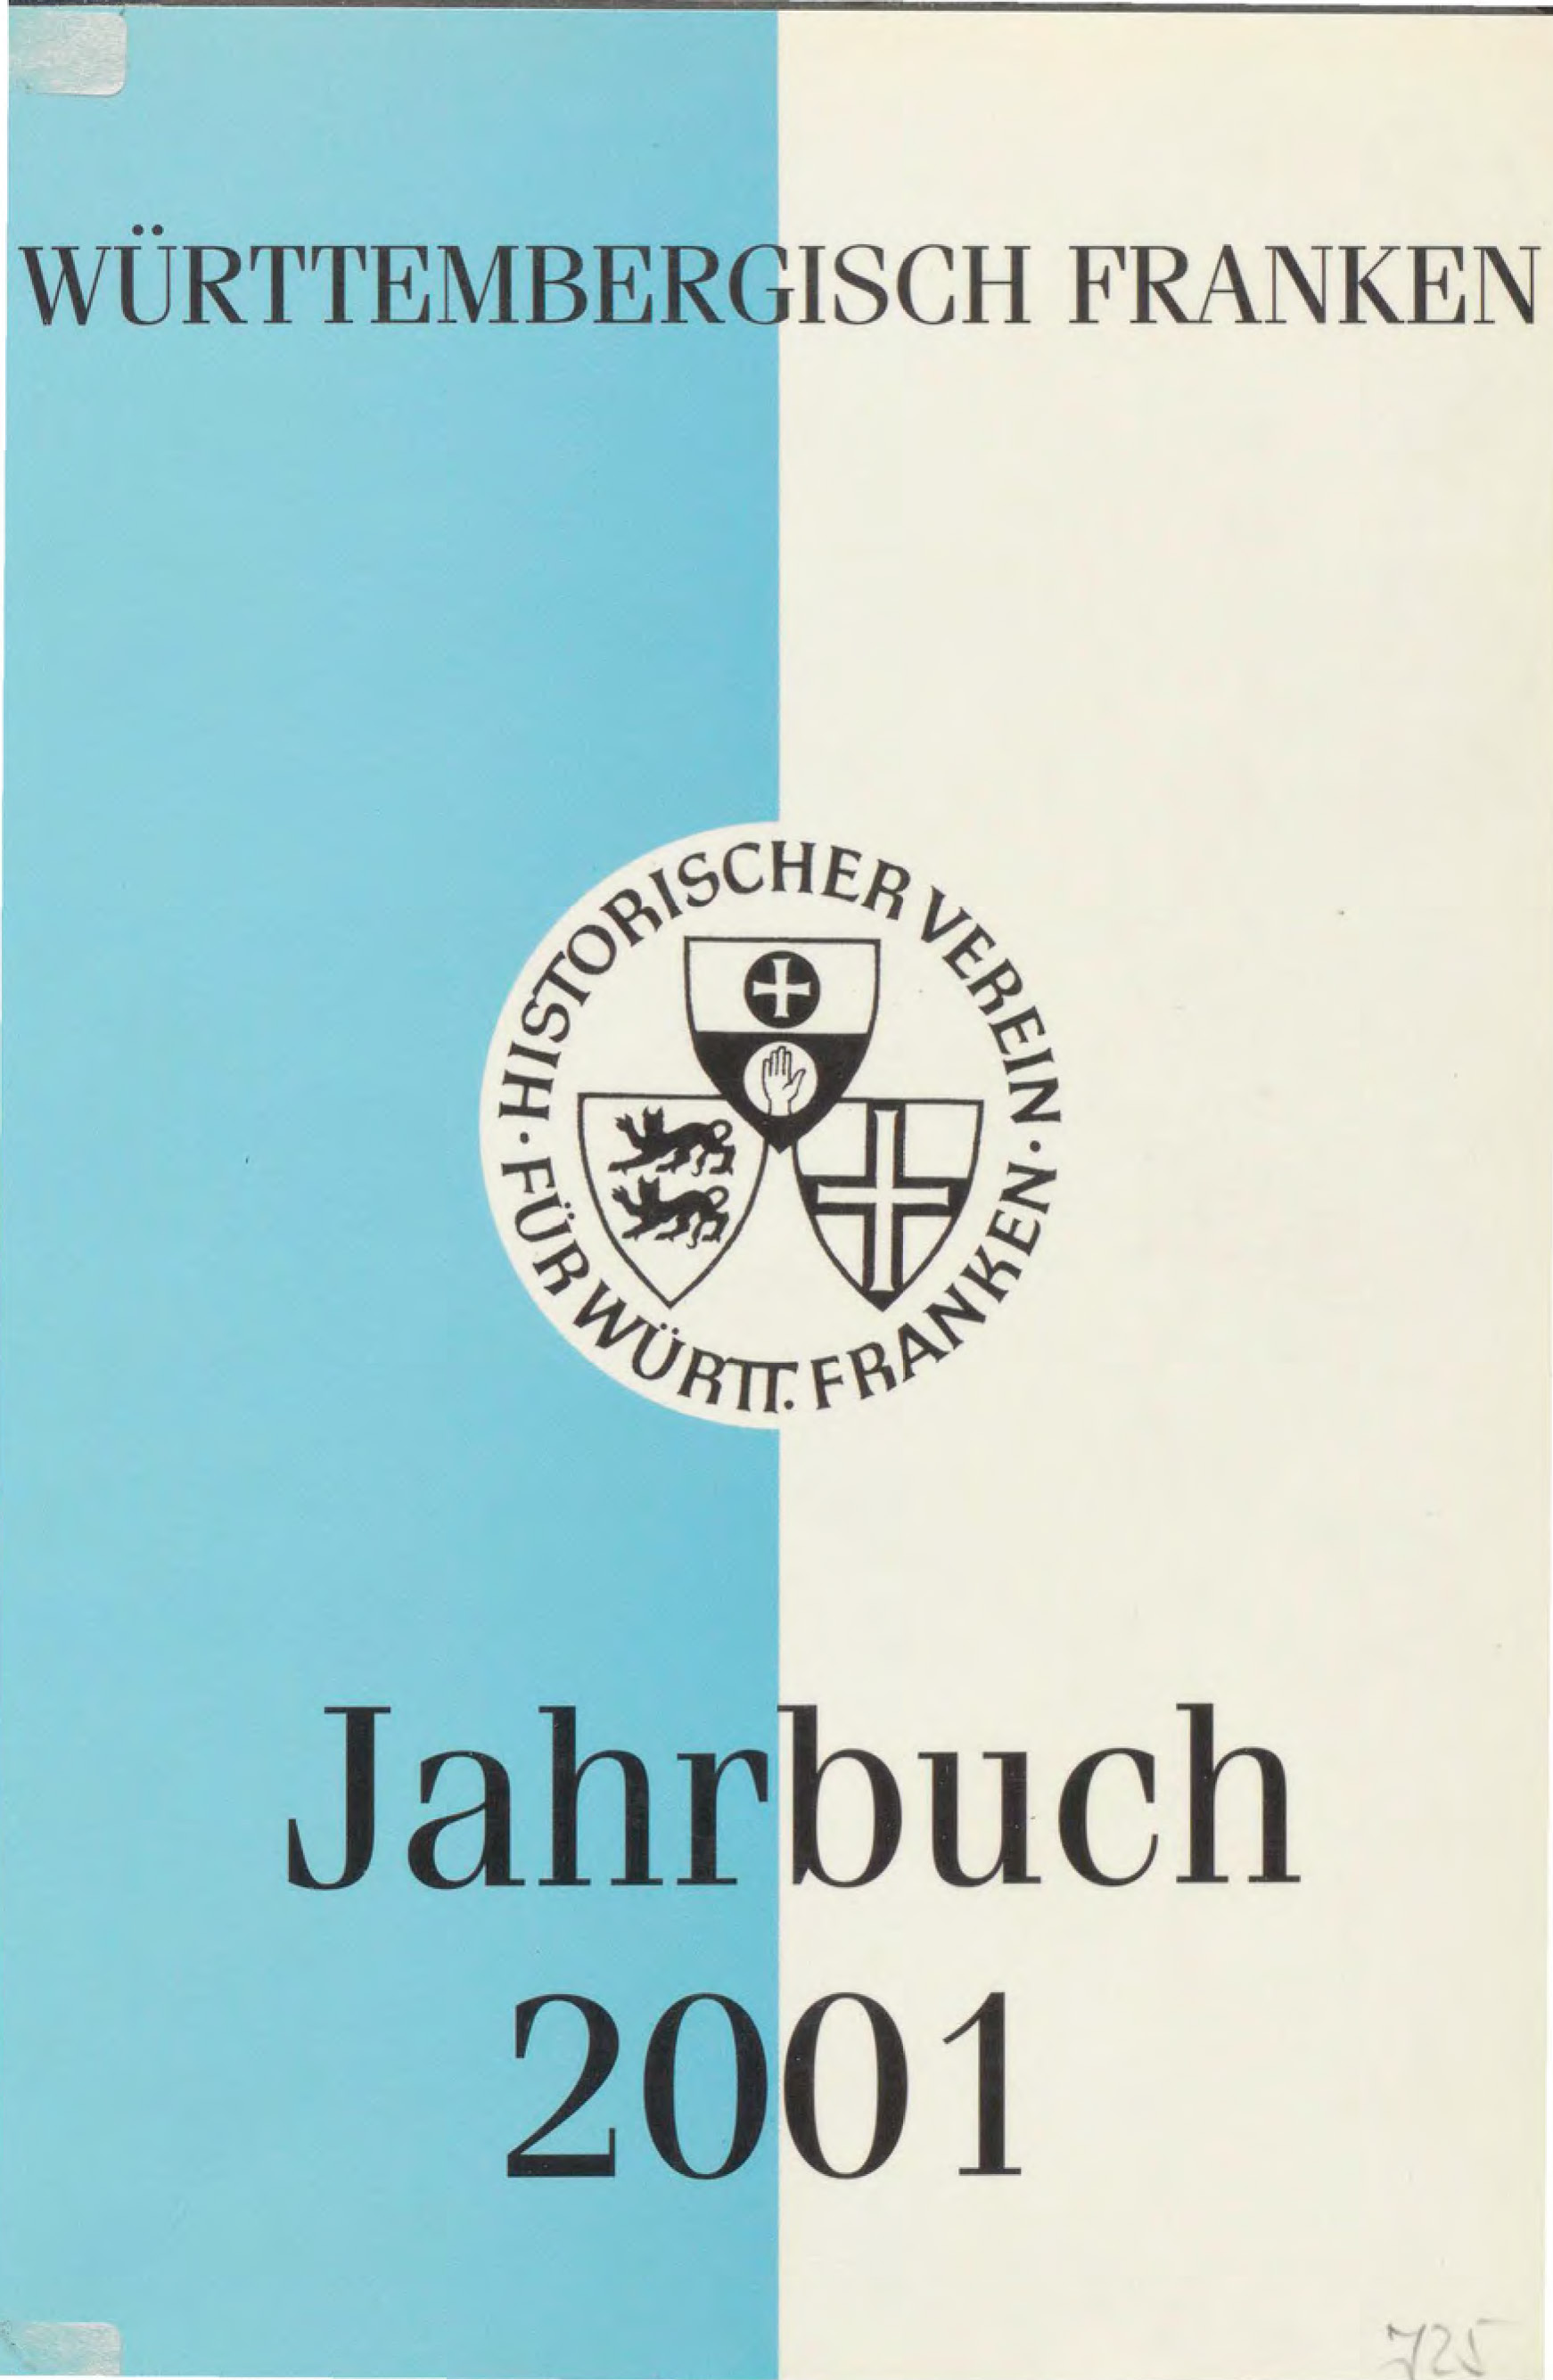                     Ansehen Bd. 85 (2001): Württembergisch Franken
                